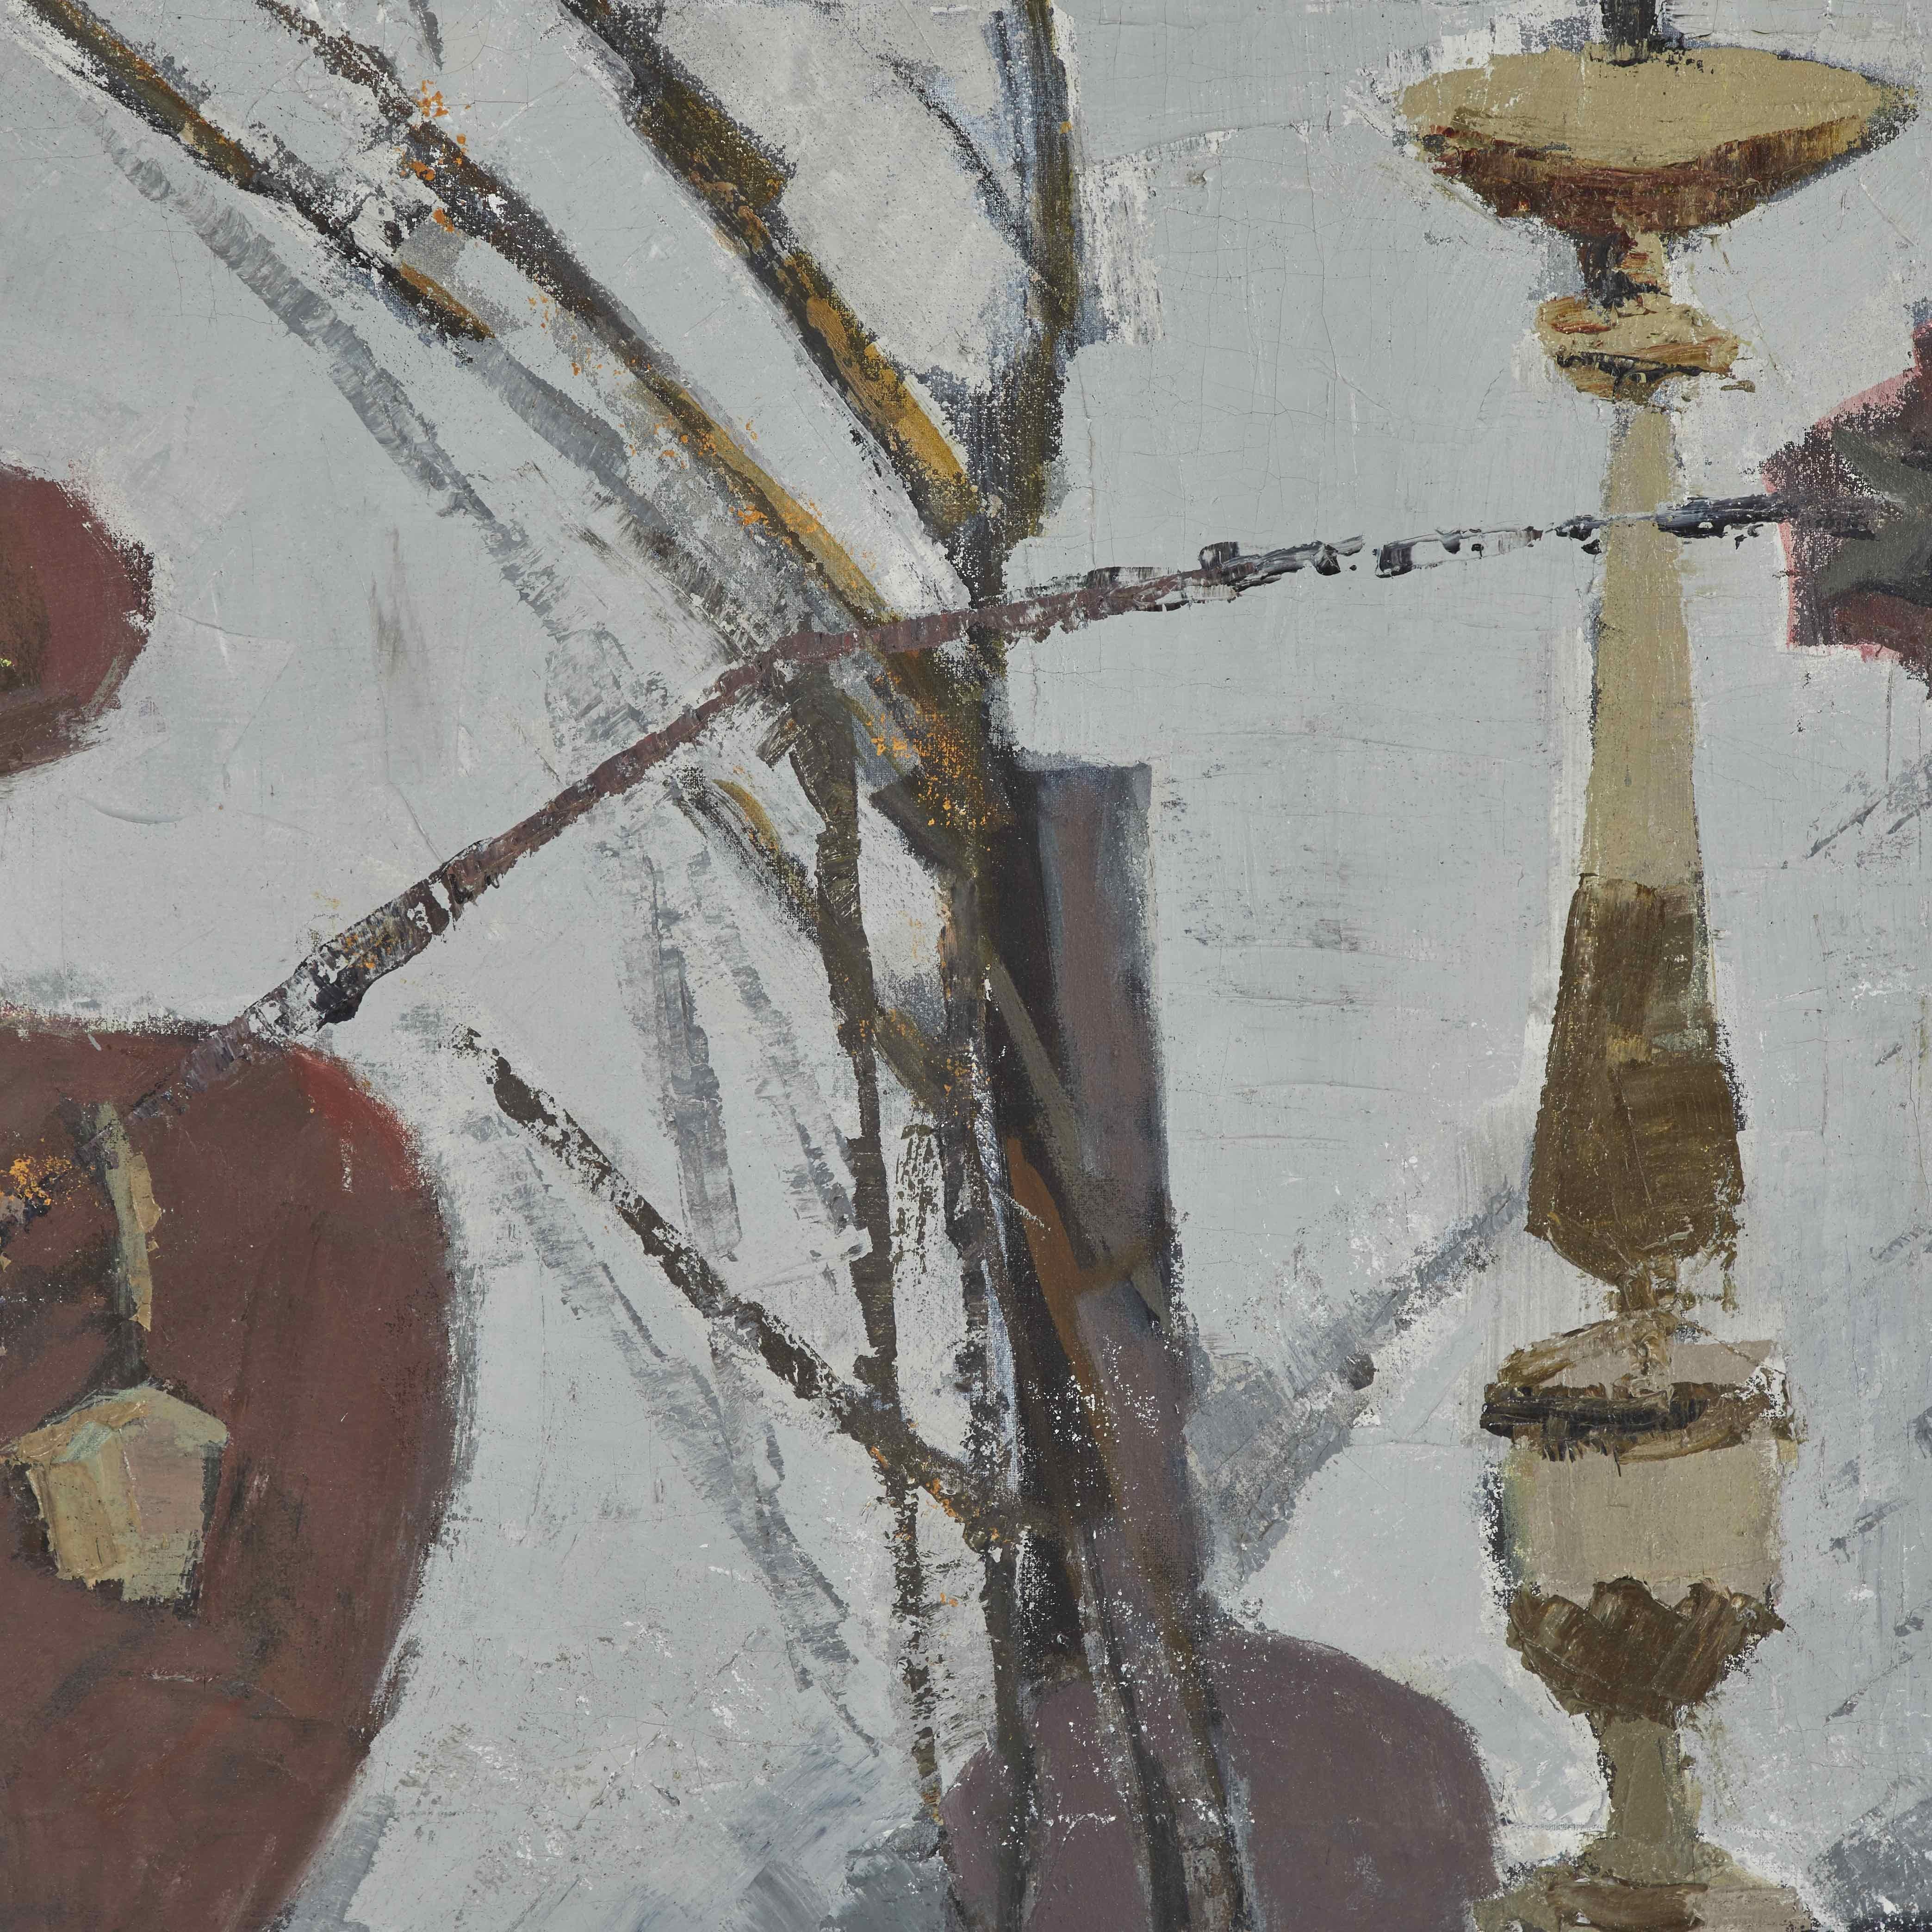 Nature morte cubiste française du début du 20e siècle, peinture à l'huile sur toile. L'œuvre semi-abstraite représente un plateau de table avec des fruits, un chandelier, une palette et une bouteille utilisée comme vase pour des fleurs fanées.  La